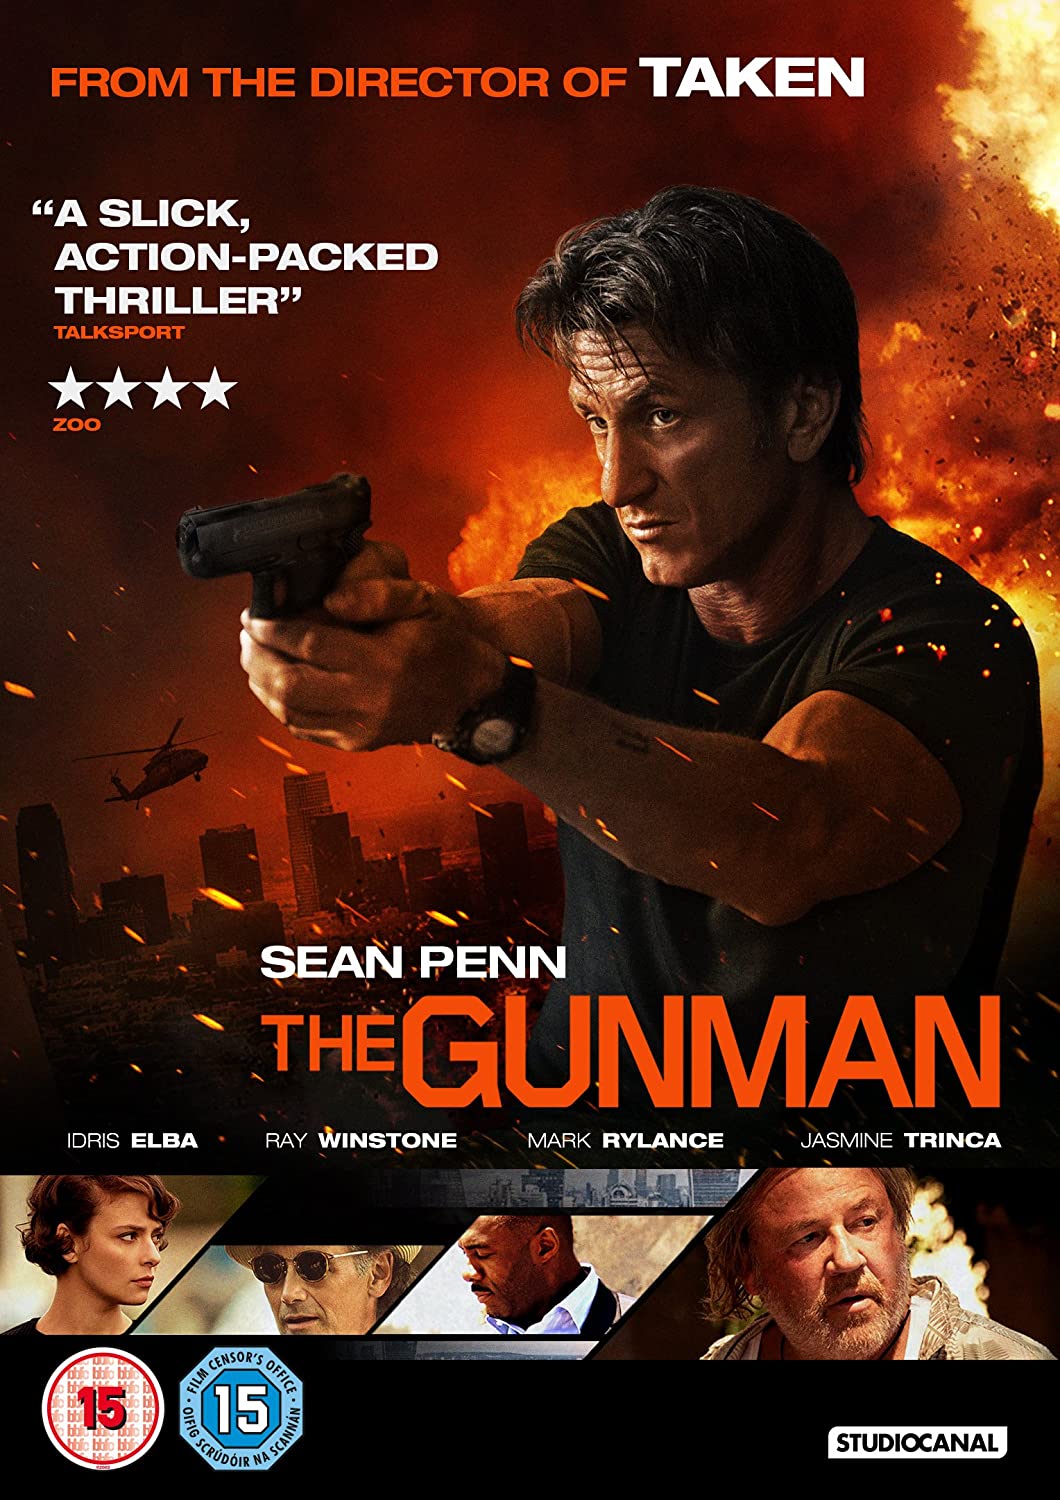 The Gunman [2015] - Action/Drama [DVD]